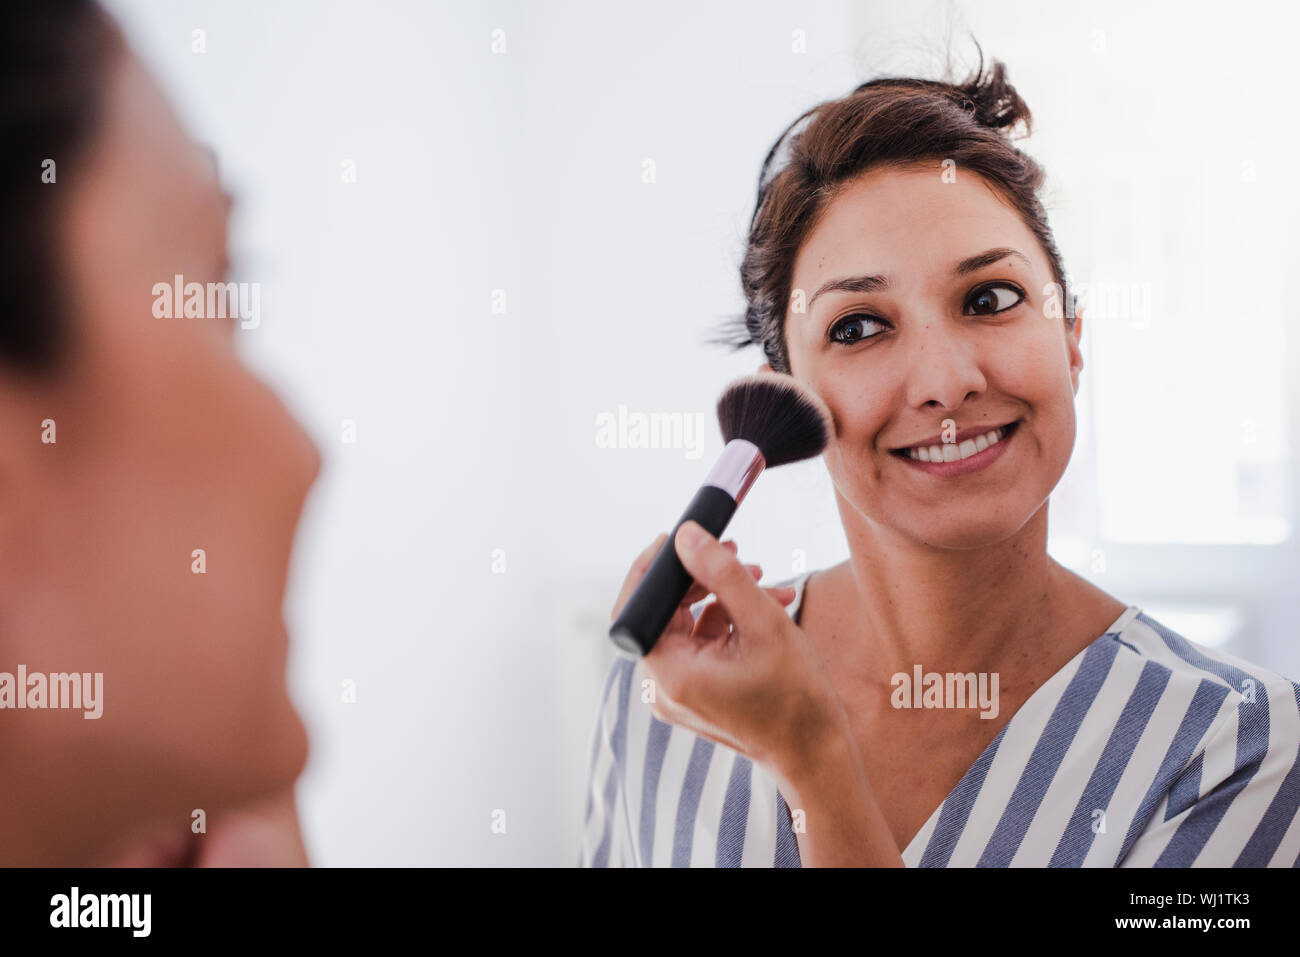 Joven chica latina maquillarse frente al espejo de aplicar la base de maquillaje con una brocha. Foto de stock